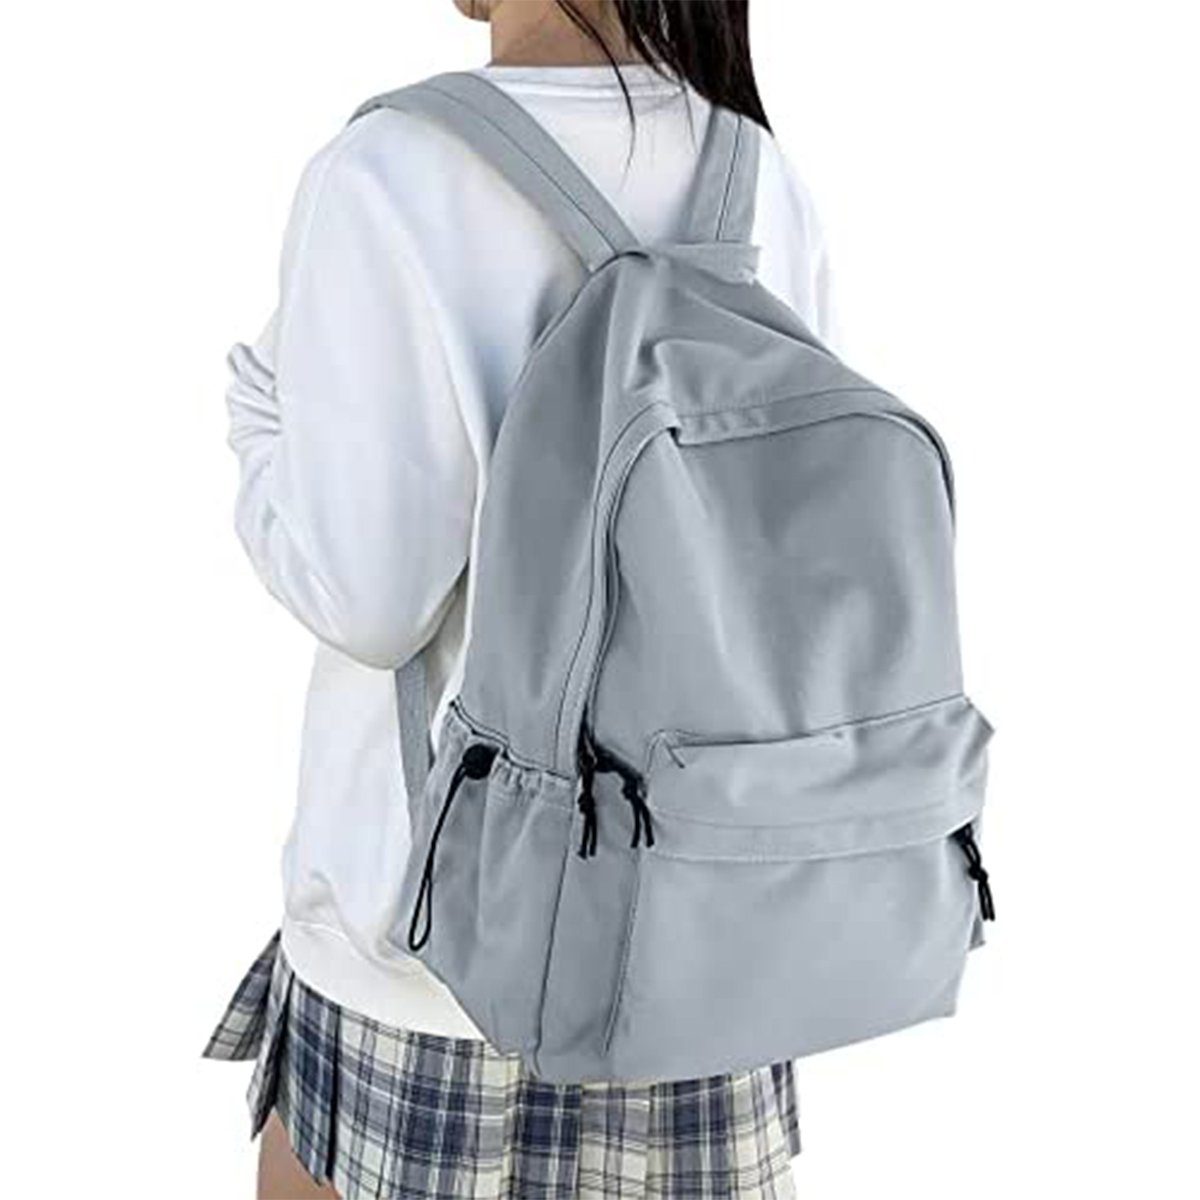 XDeer Schulrucksack Schulrucksack Damen Travel Schultaschen, 15,6 Zoll Laptop Rucksack für Mädchen im Teenageralter Bookbag Blau | Schulrucksäcke